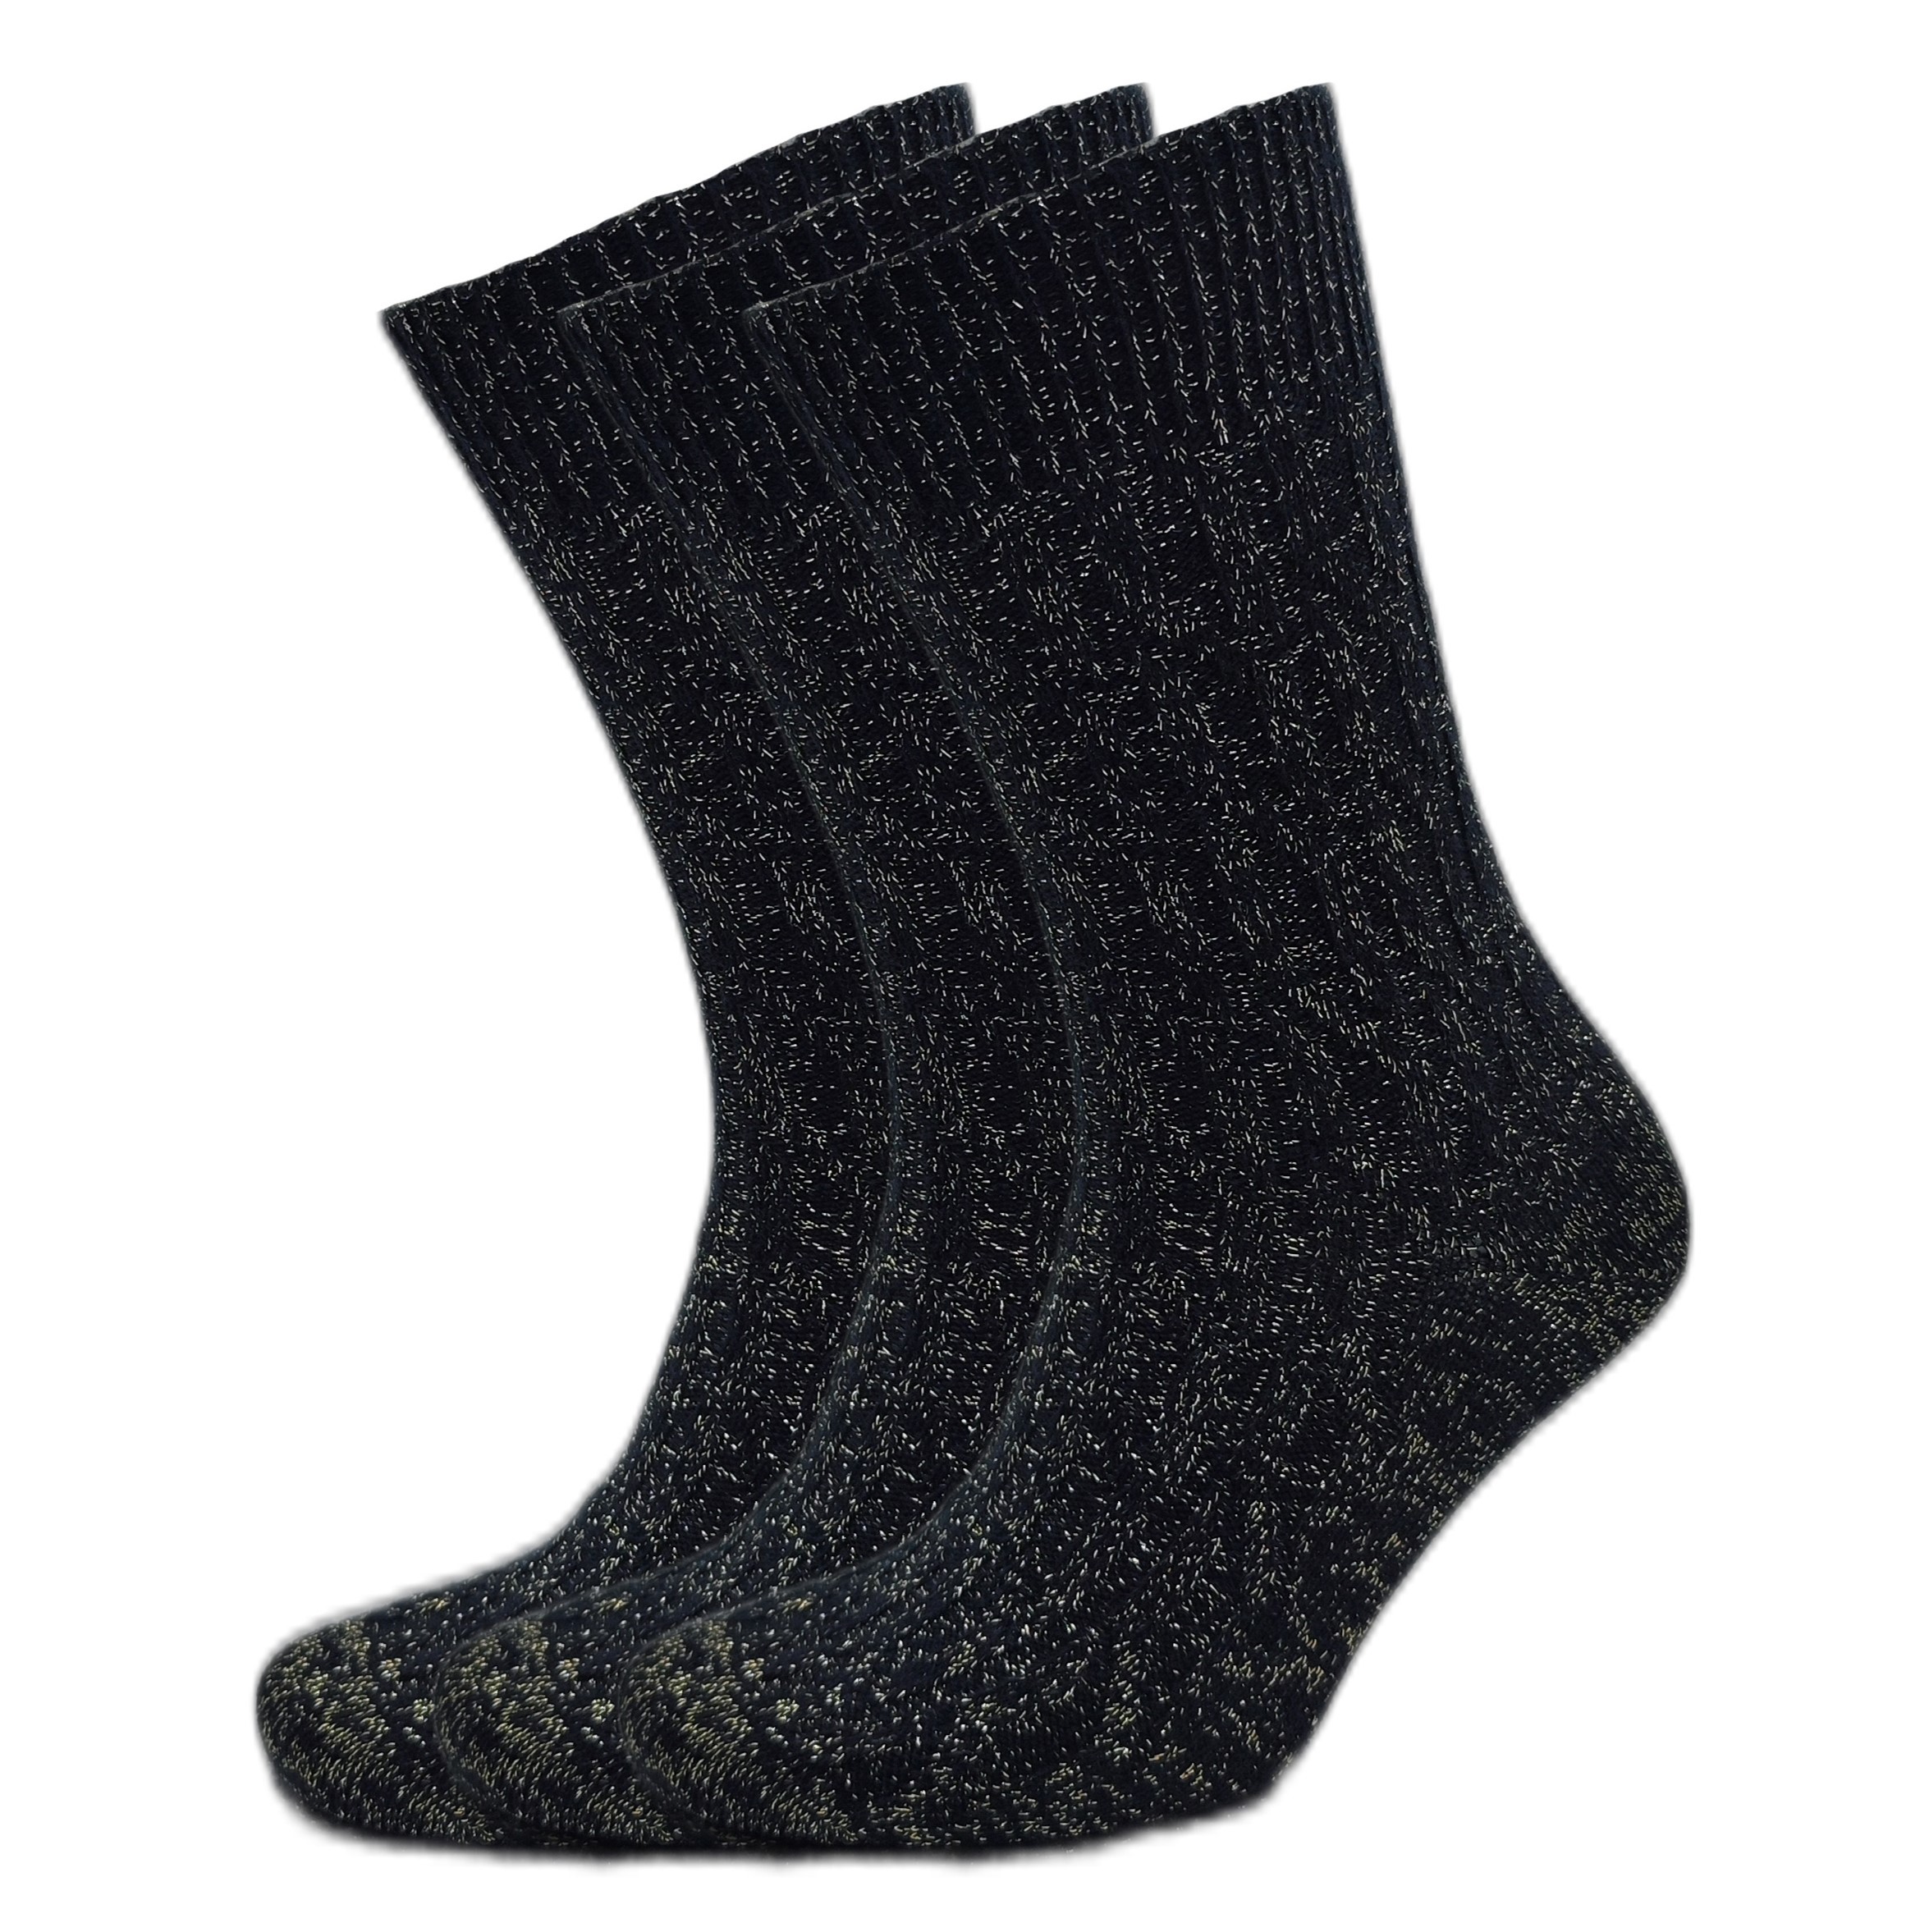 353 Wool Black: 3 pairs